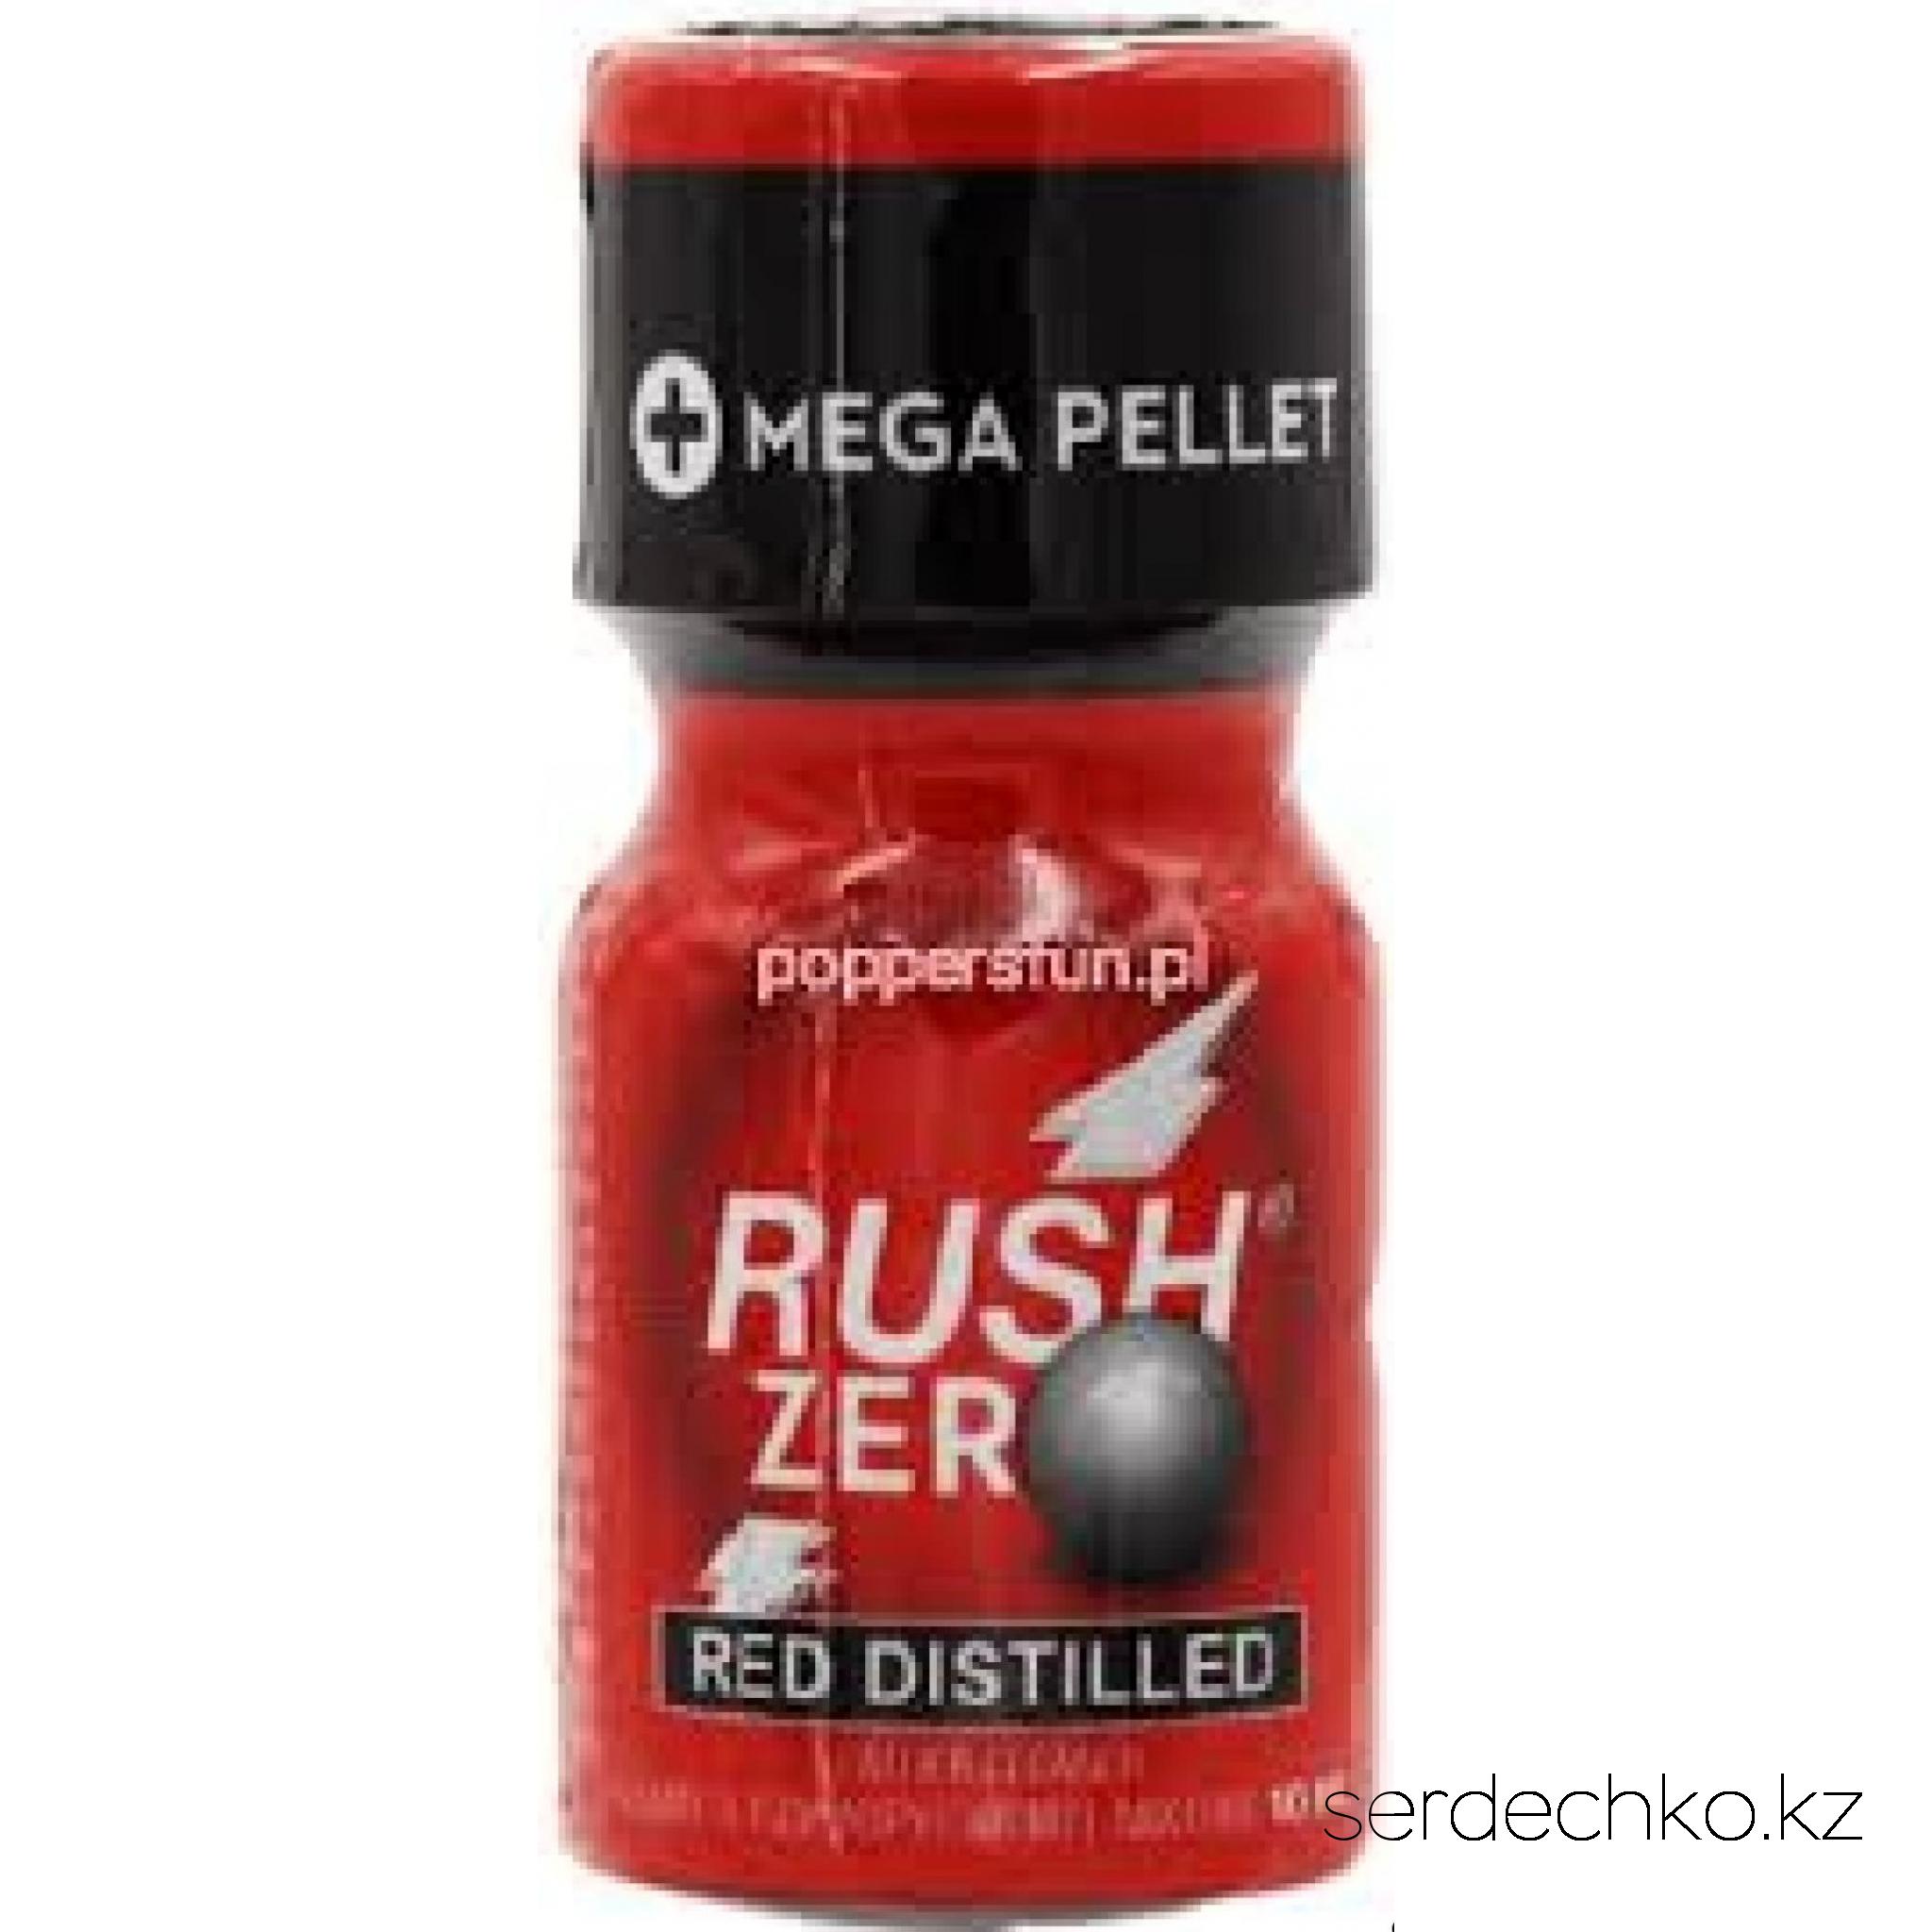 Попперс Rush Zero Red Distilled 10 ml, 
	Вы уже давно знакомы с Black Label, так что давайте перейдем к чему-то новому и лучшему - Red Distilled! Эта новая формула прошла более длительный процесс дистилляции, чтобы не только удалить лишние молекулы воды и сохранить нитрит как можно более чистым, но также идеально сочетает в себе изопропил и изопентилнитриты для увеличения мощности и более длительного эффекта!
	
	Согласно цветовому коду, красный цвет отводится любителям секса с кулаками. Неслучайно Rush наконец-то выпустил попперc такого цвета и что это самый мощный аромат из возможных: этот попперc не для новичков! Rush Zero Red Distilled предназначен для любителей экстремальных ощущений и адреналина, а также для тех, кто хочет выйти за пределы своих возможностей!
	
	Его необычный аромат представляет собой оригинальную смесь изопропила и изопентила, двух очень разных типов нитритов, которые обеспечивают сильнейшие ощущения при приятном запахе. Большой Power Pellet внутри также поглощает молекулы воды, когда вы открываете бутылку, чтобы поддерживать чистоту и свежесть на самом высоком уровне, которые могут быть только в бутылках с Pellet.
	
	Rush Zero Red Distilled снабжен воздухонепроницаемой и герметичной крышкой, поэтому вам больше не нужно беспокоиться об утечке попперса. Отсутствие риска пролить, благодаря 100% герметичной крышке, которая предотвращает утечку всего воздуха и жидкости, чтобы ваши попперсы дольше оставались свежими.
